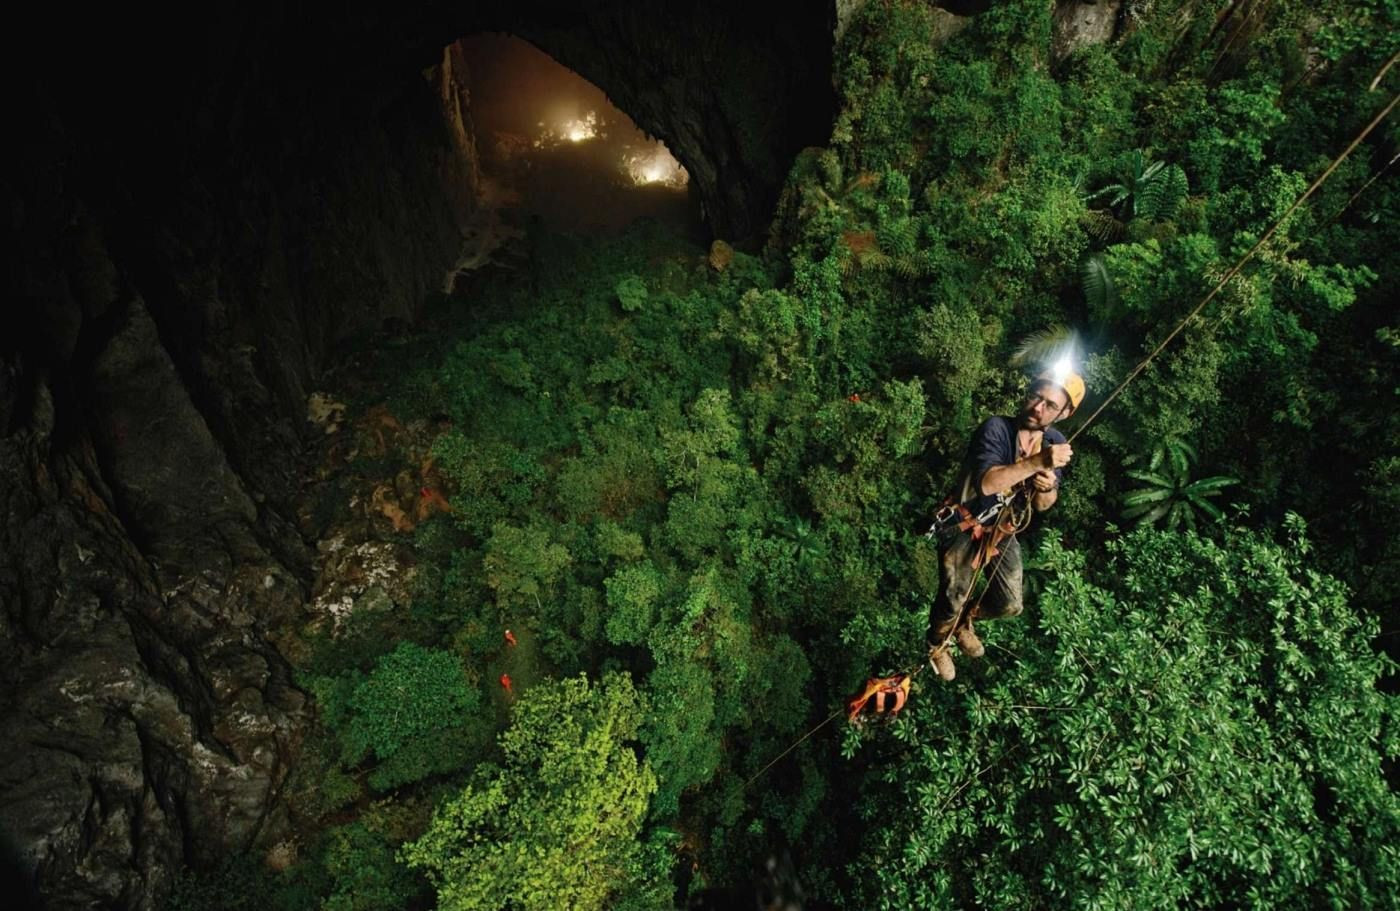 Du lịch khám phá hang động là sản phẩm du lịch hấp dẫn của tỉnh Quảng Bình. Ảnh: Internet